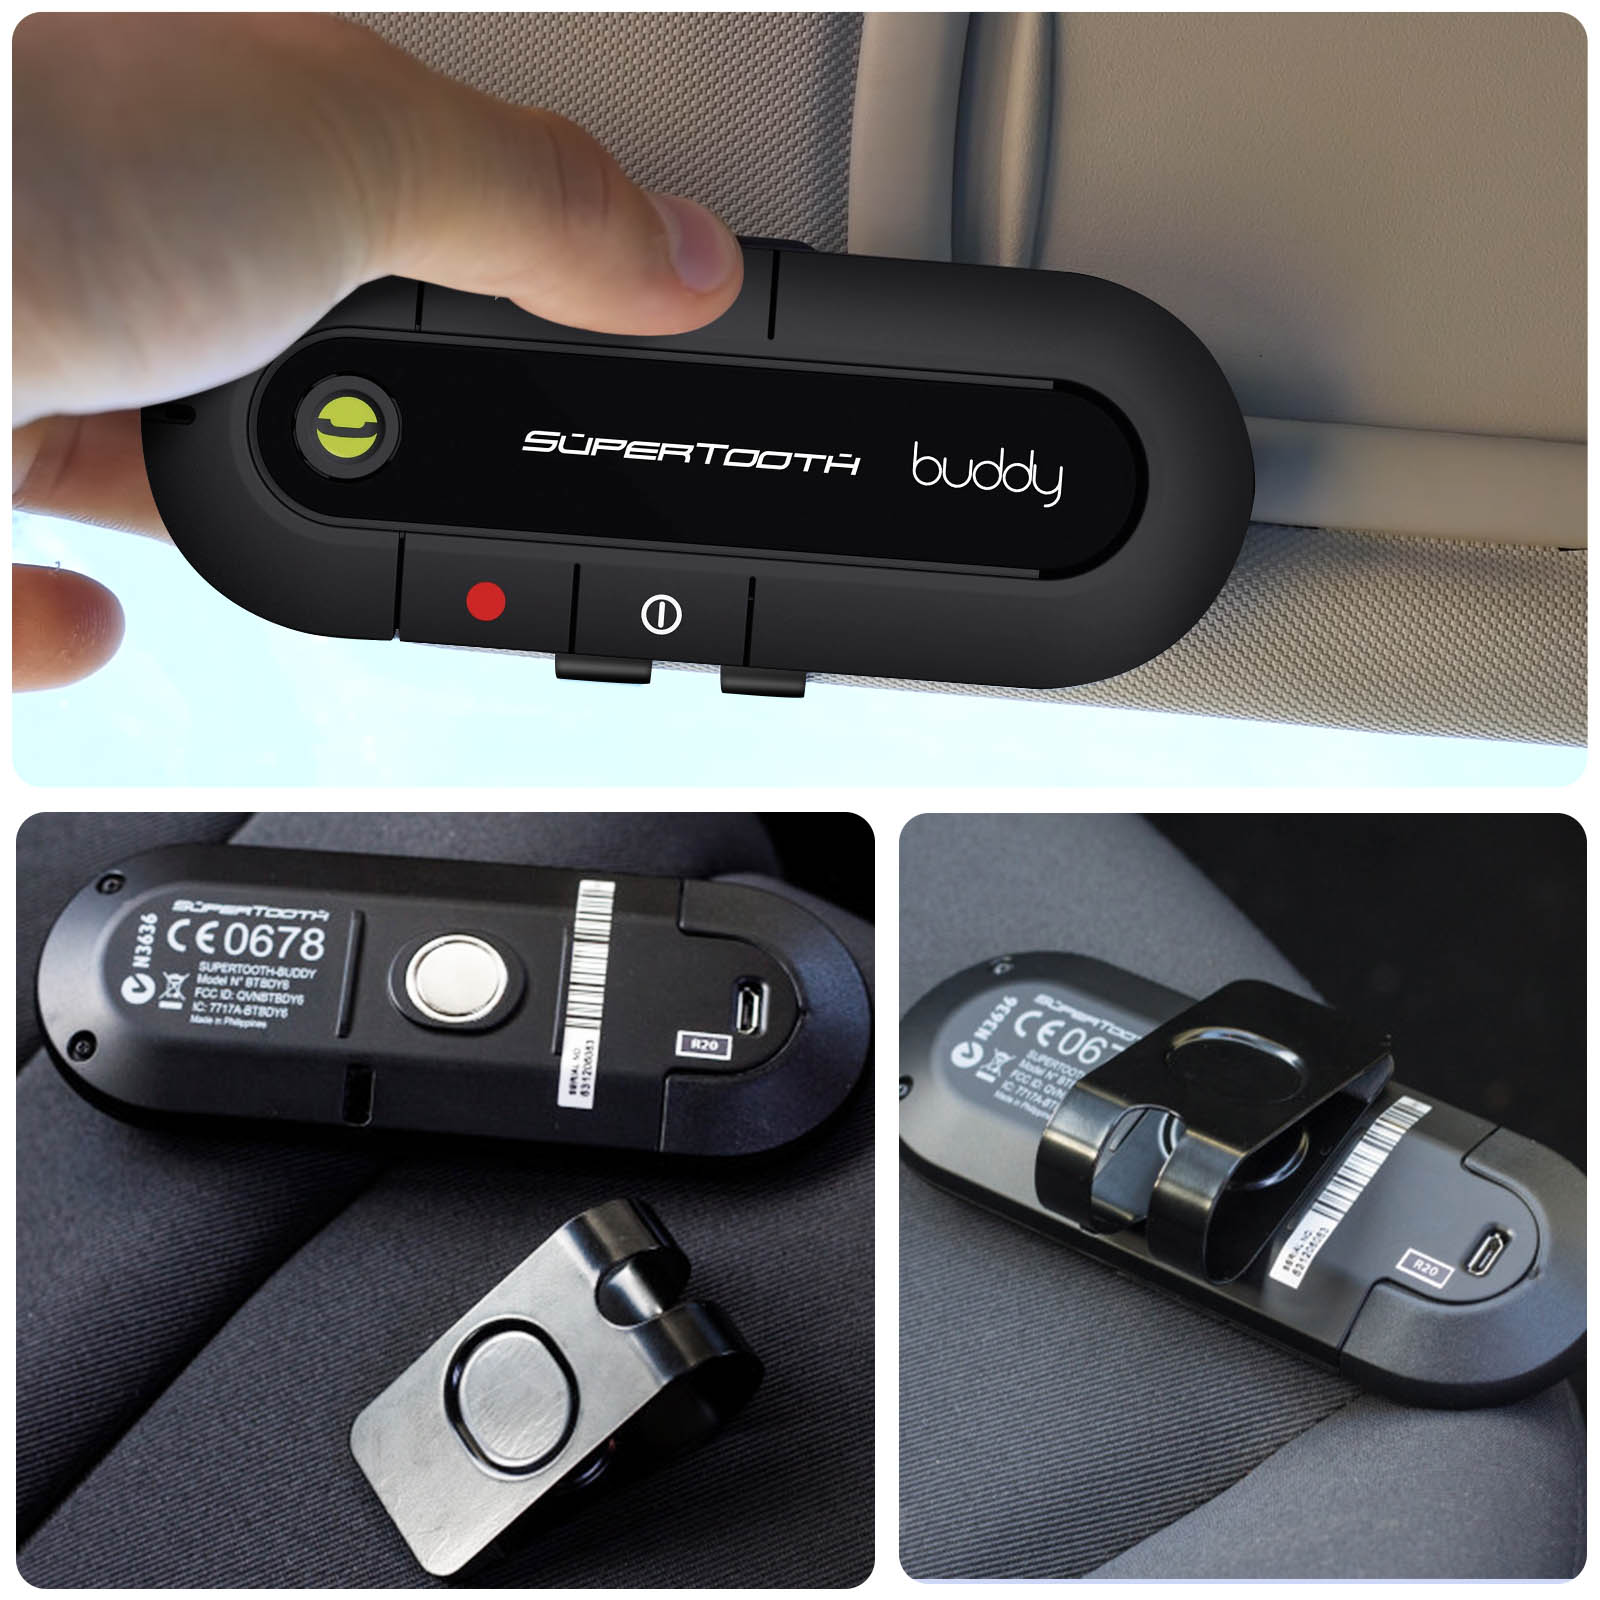 Kit mains-libres Auto Bluetooth voiture avec texture en cuir - Noir -  Acheter sur PhoneLook